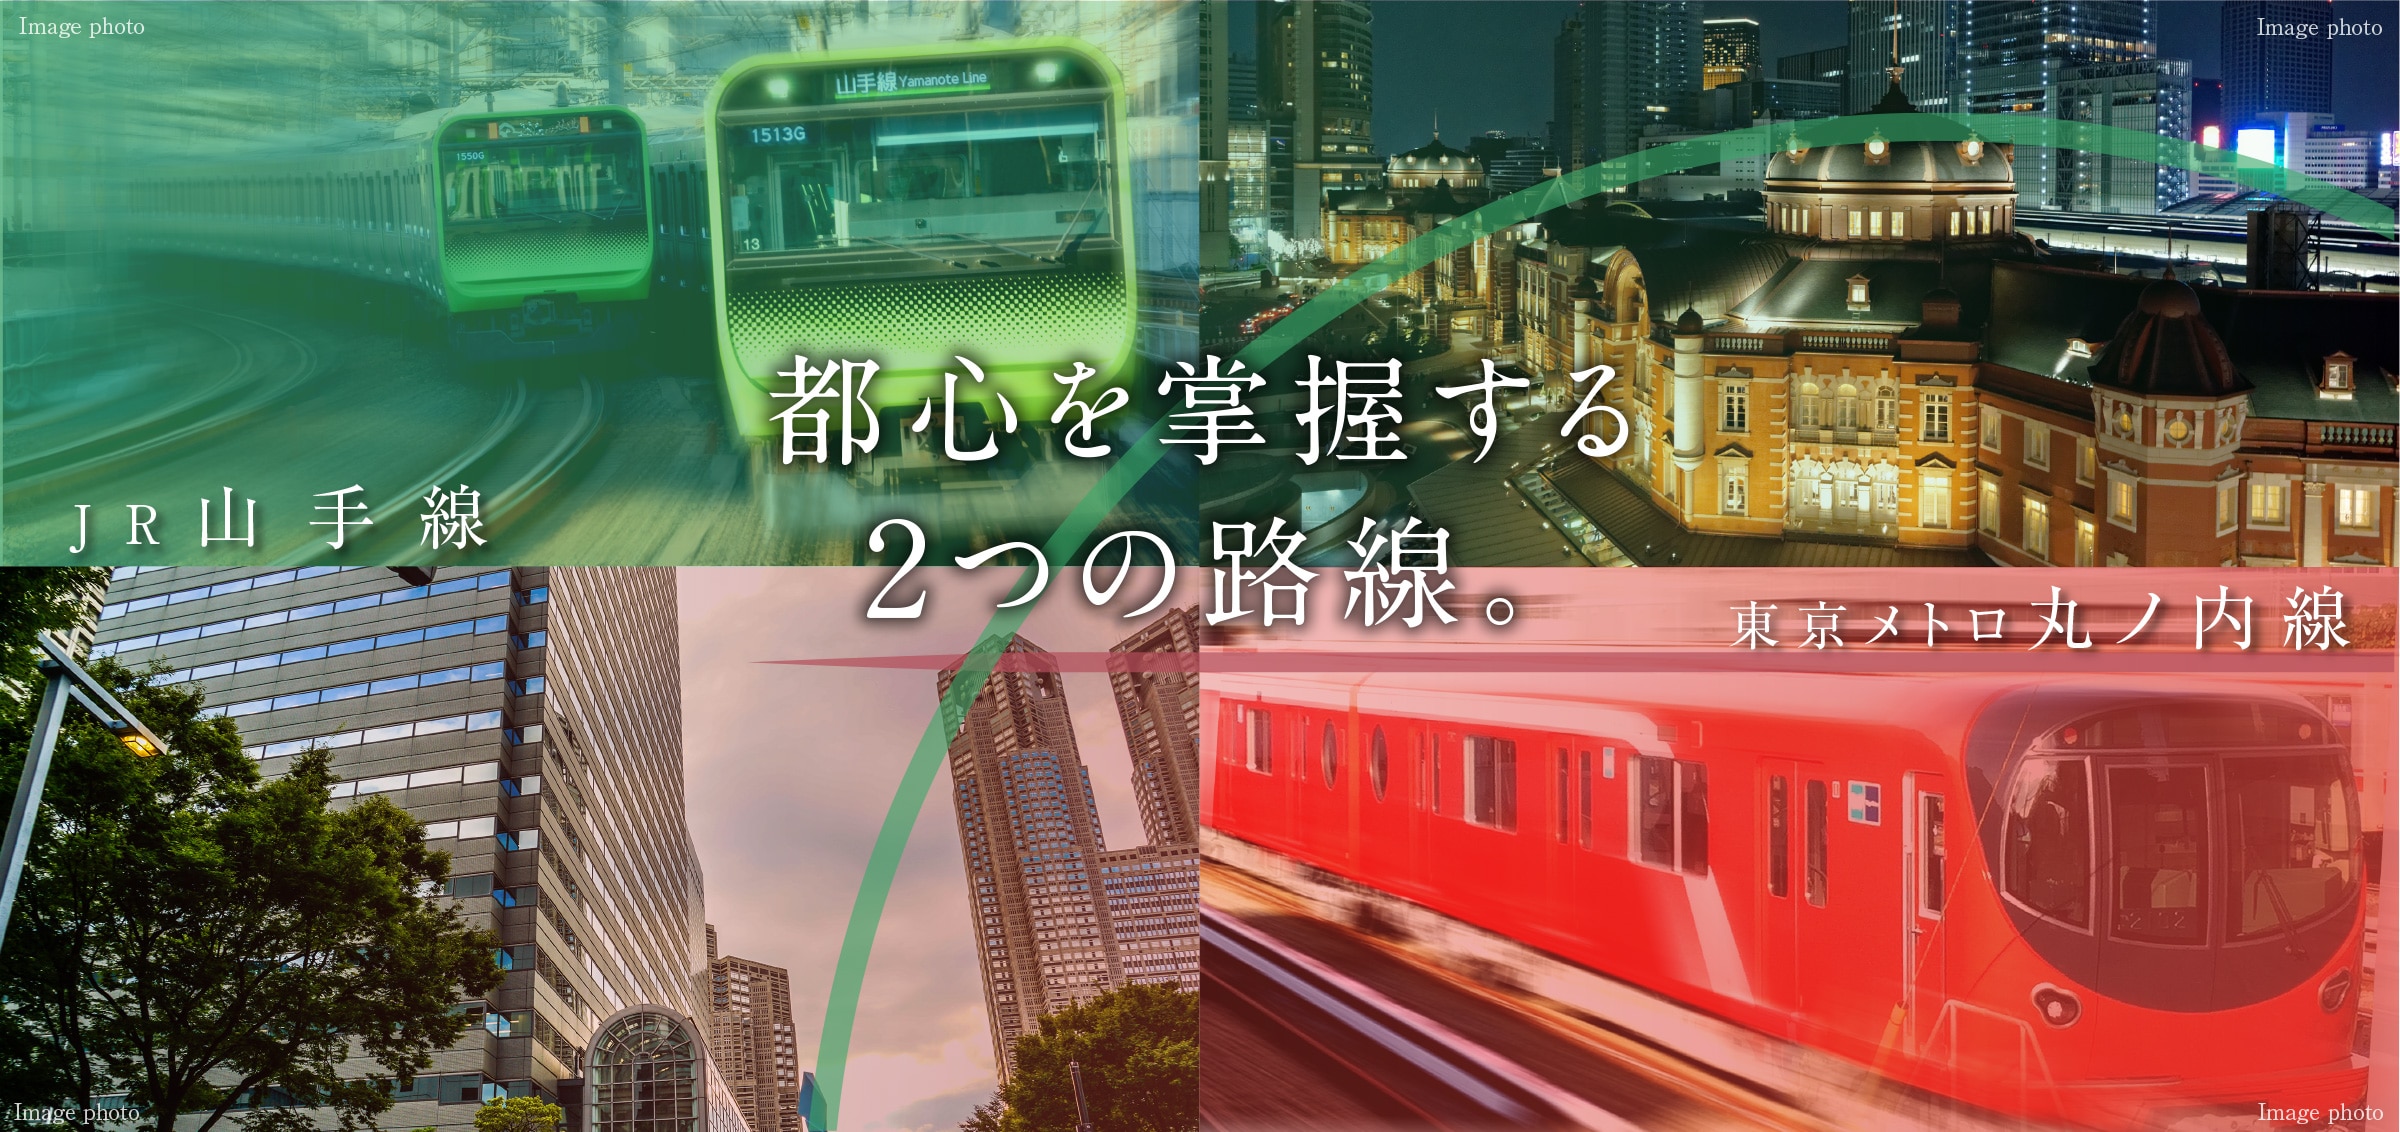 JR山手線 東京メトロ丸ノ内線 都心を掌握する2つの路線。